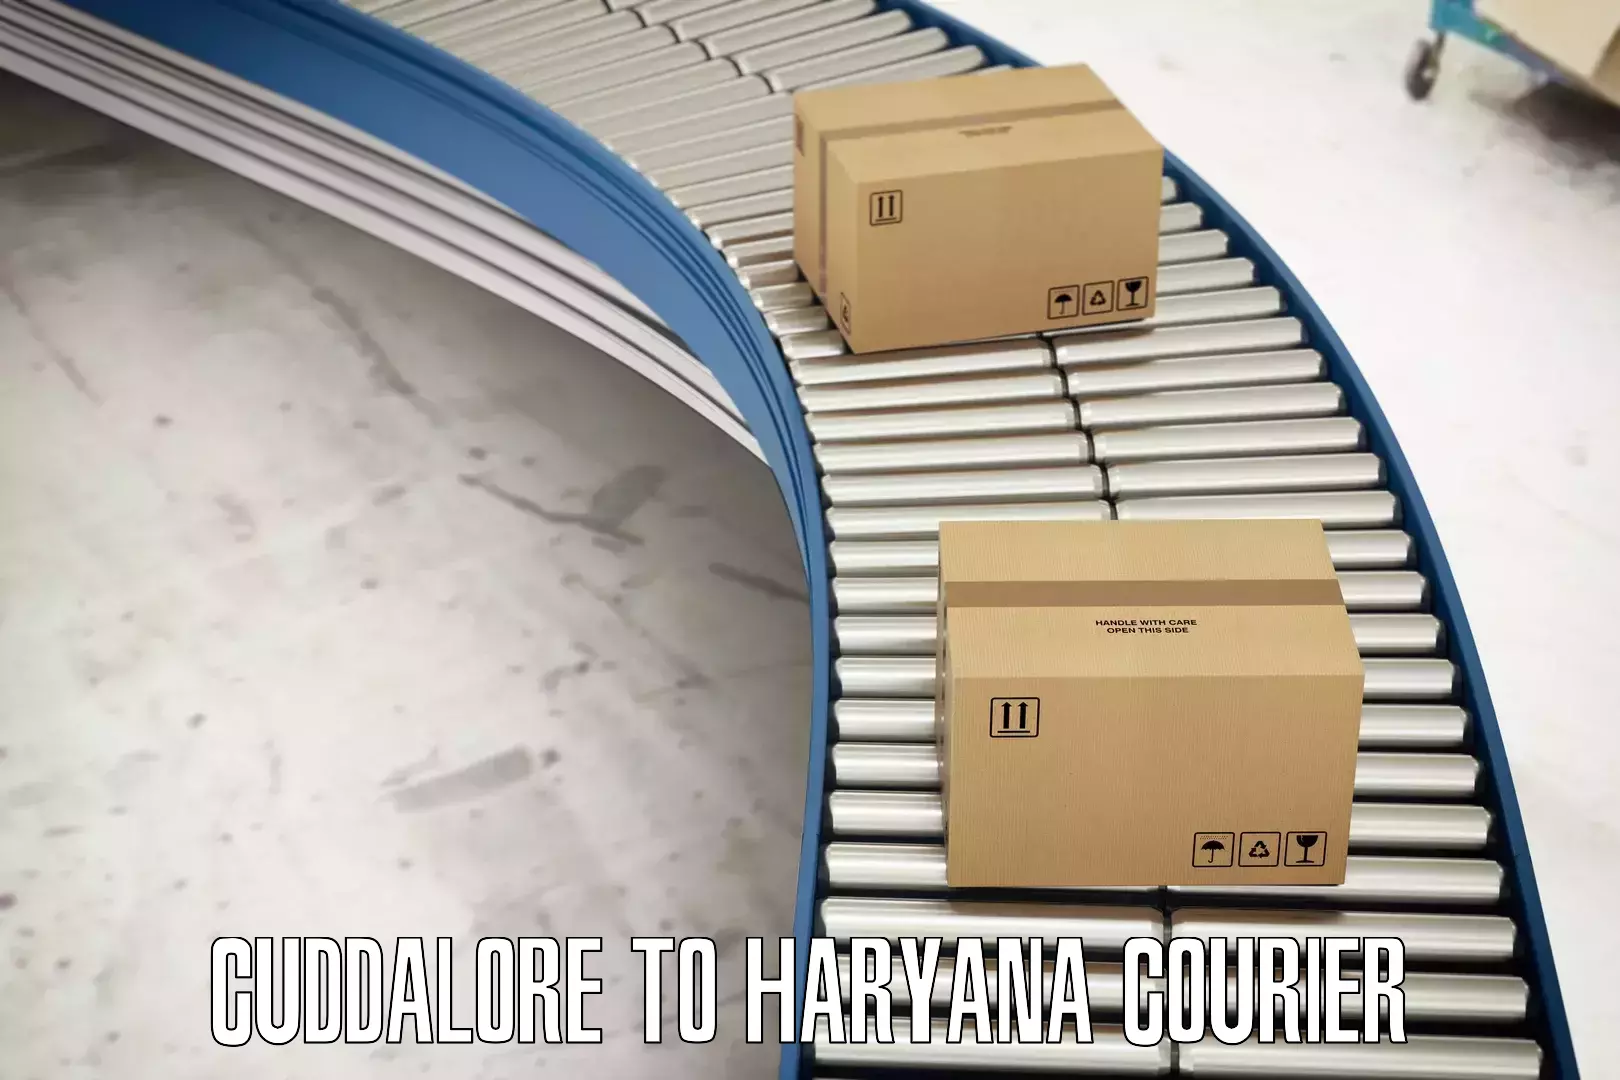 Efficient parcel delivery Cuddalore to Haryana